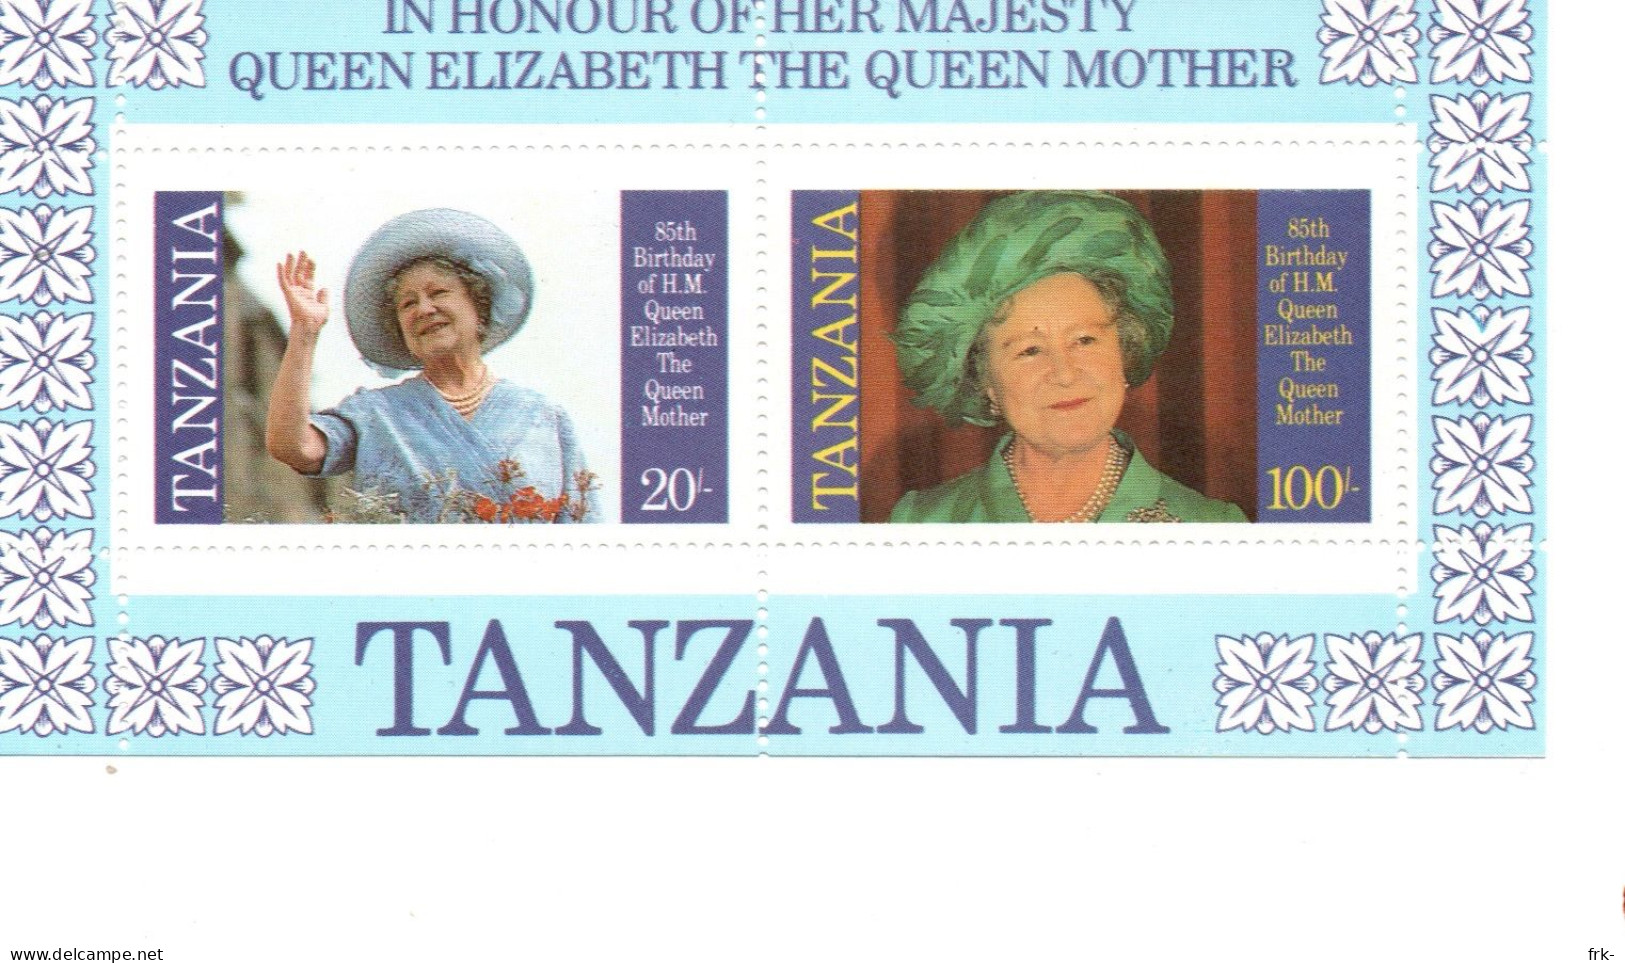 Tanzania Foglietto Queen Elizabeth Mnh - Tanzania (1964-...)